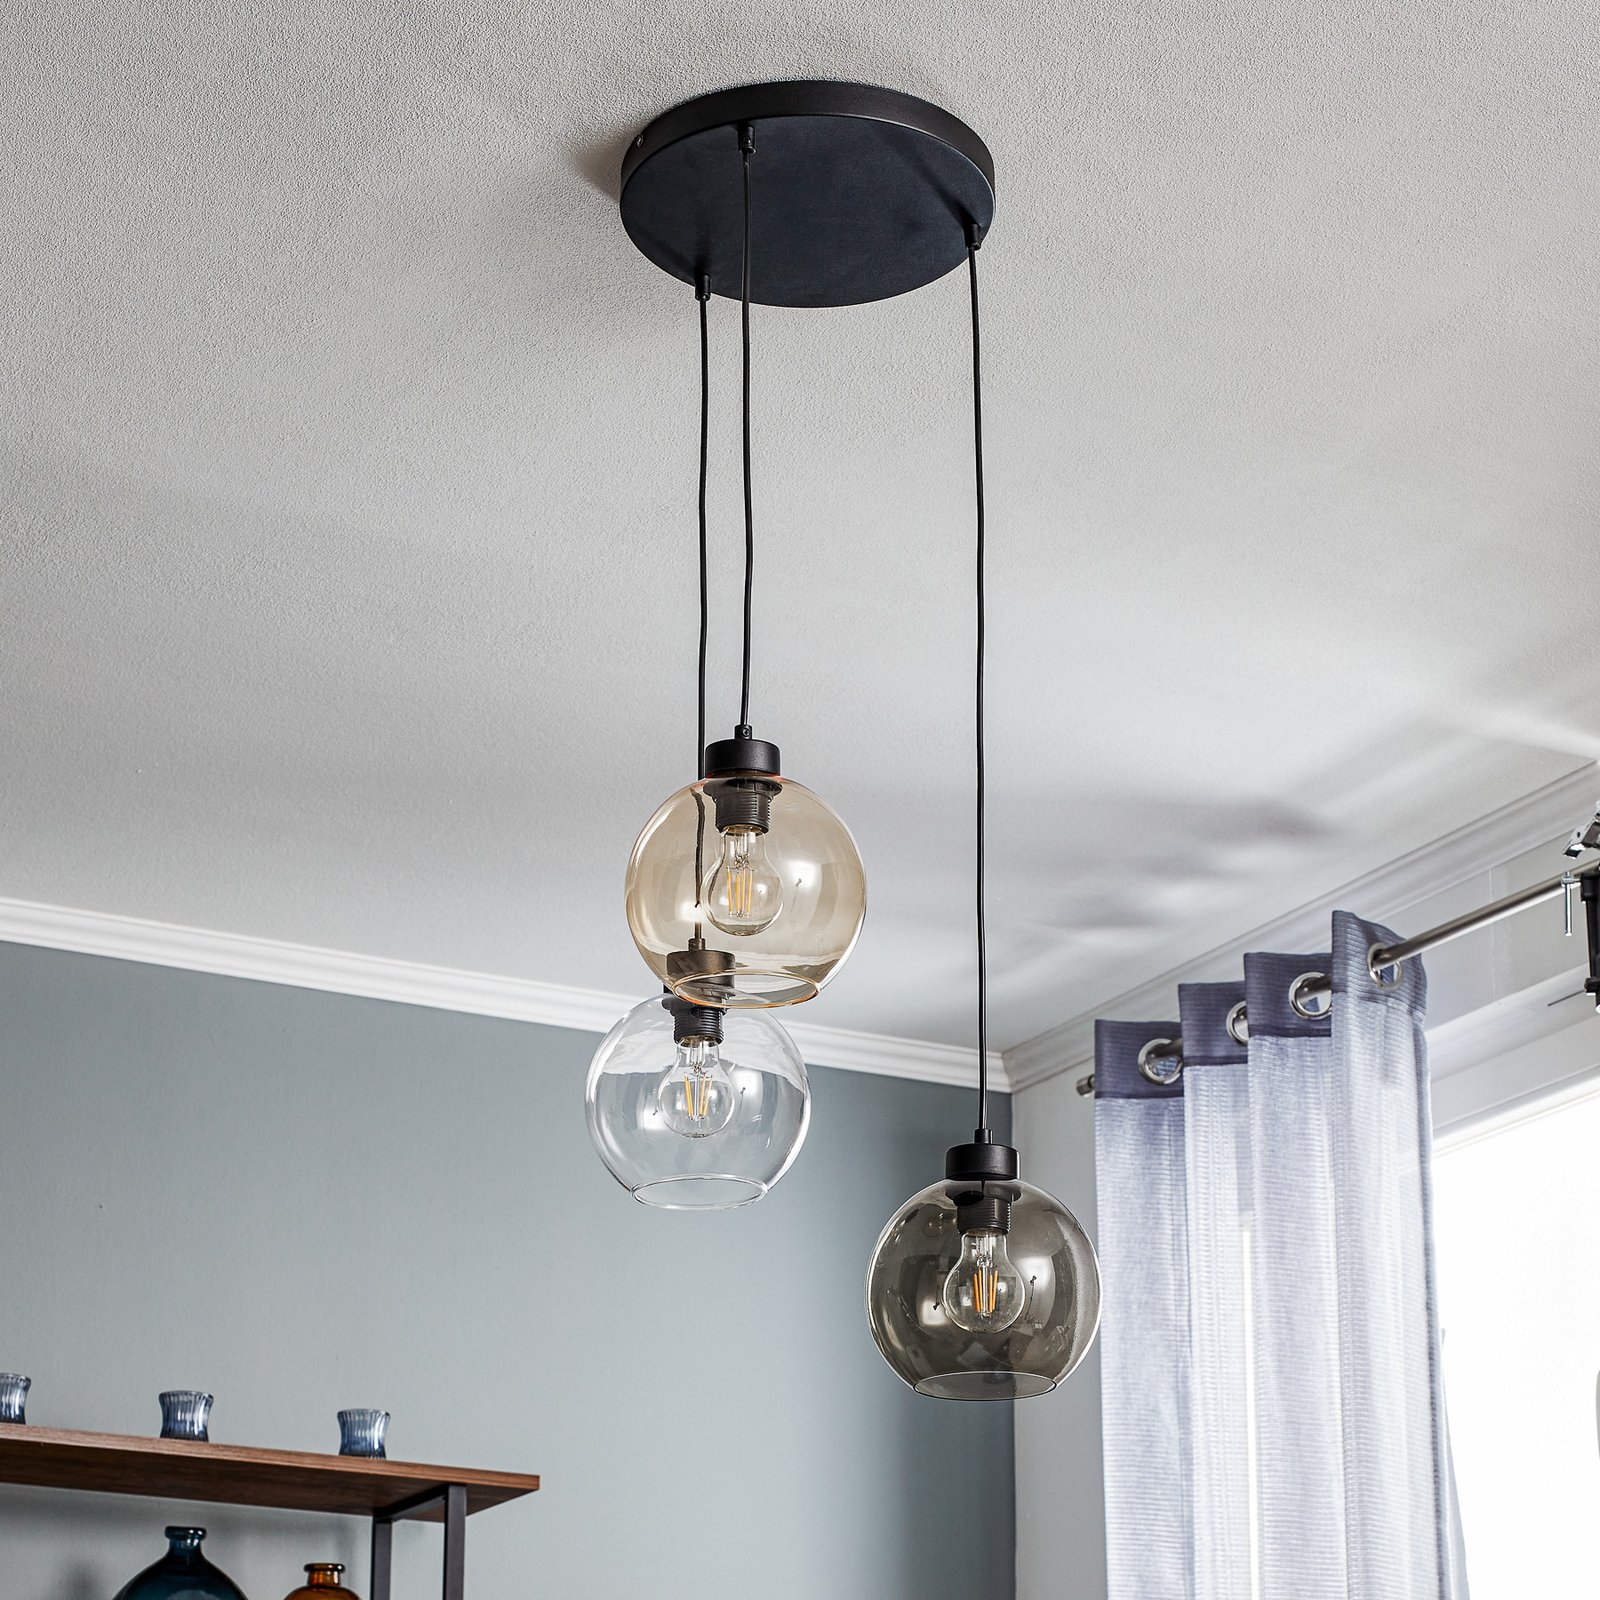 Hanglamp Cubus, 3-lamps, helder/honig/bruin